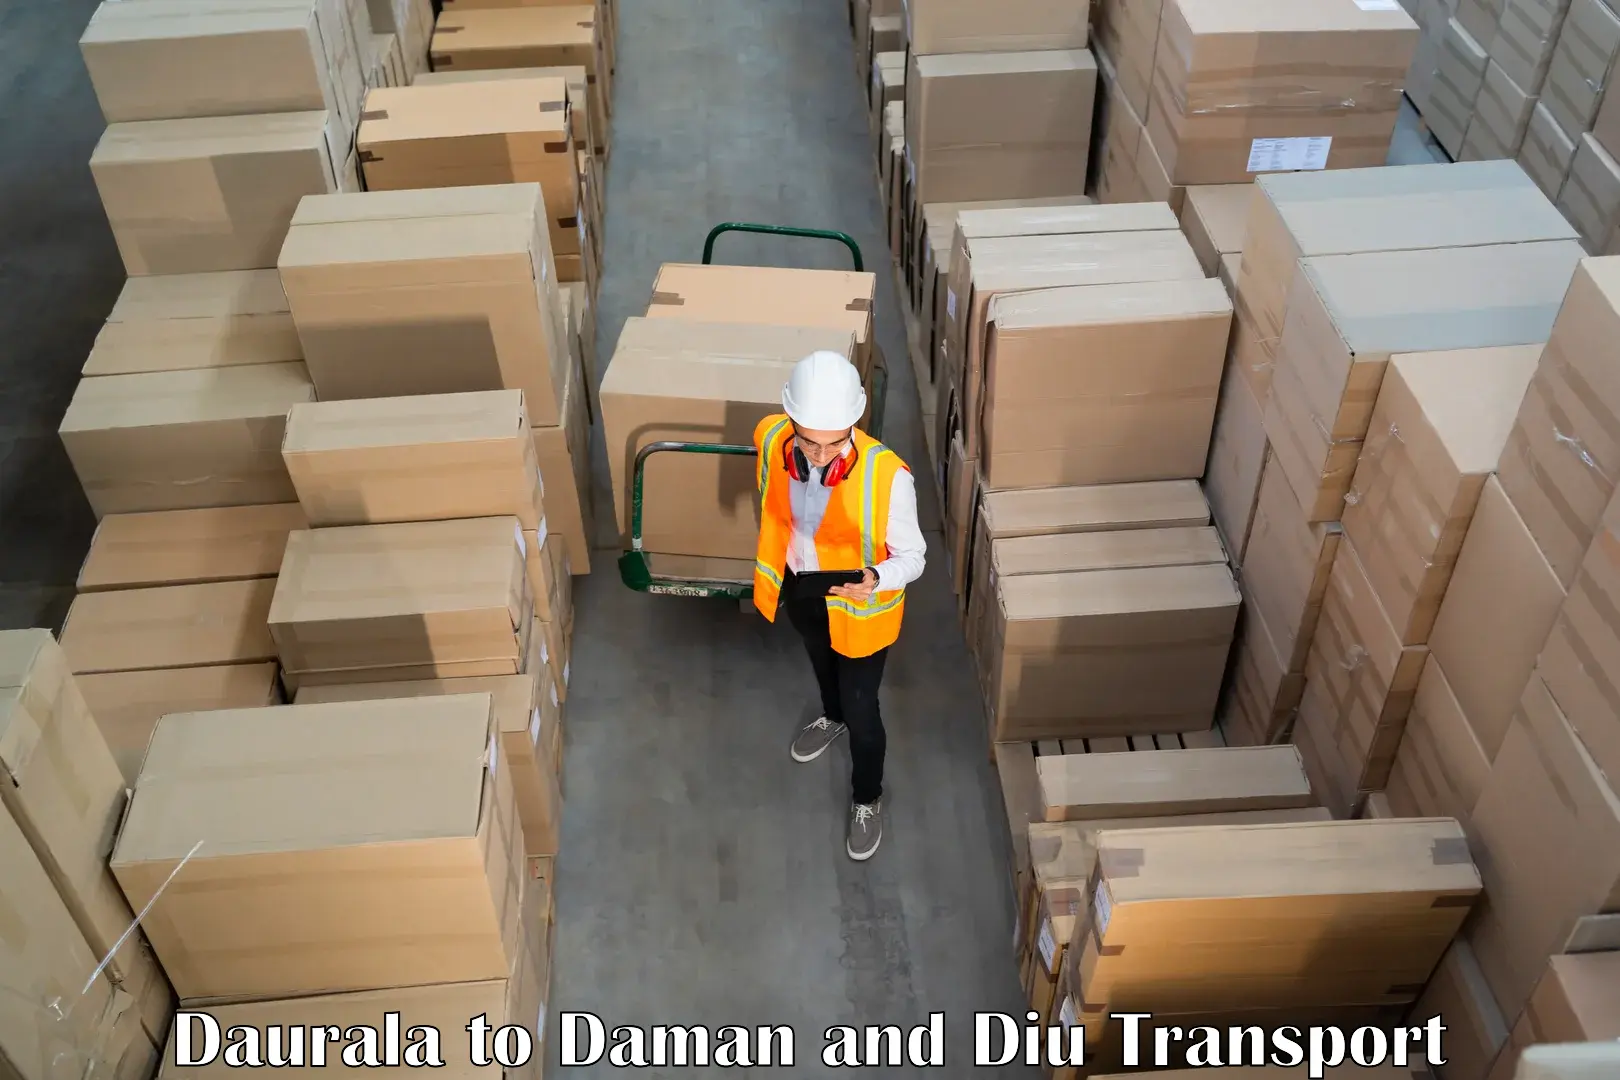 Cargo transportation services Daurala to Daman and Diu